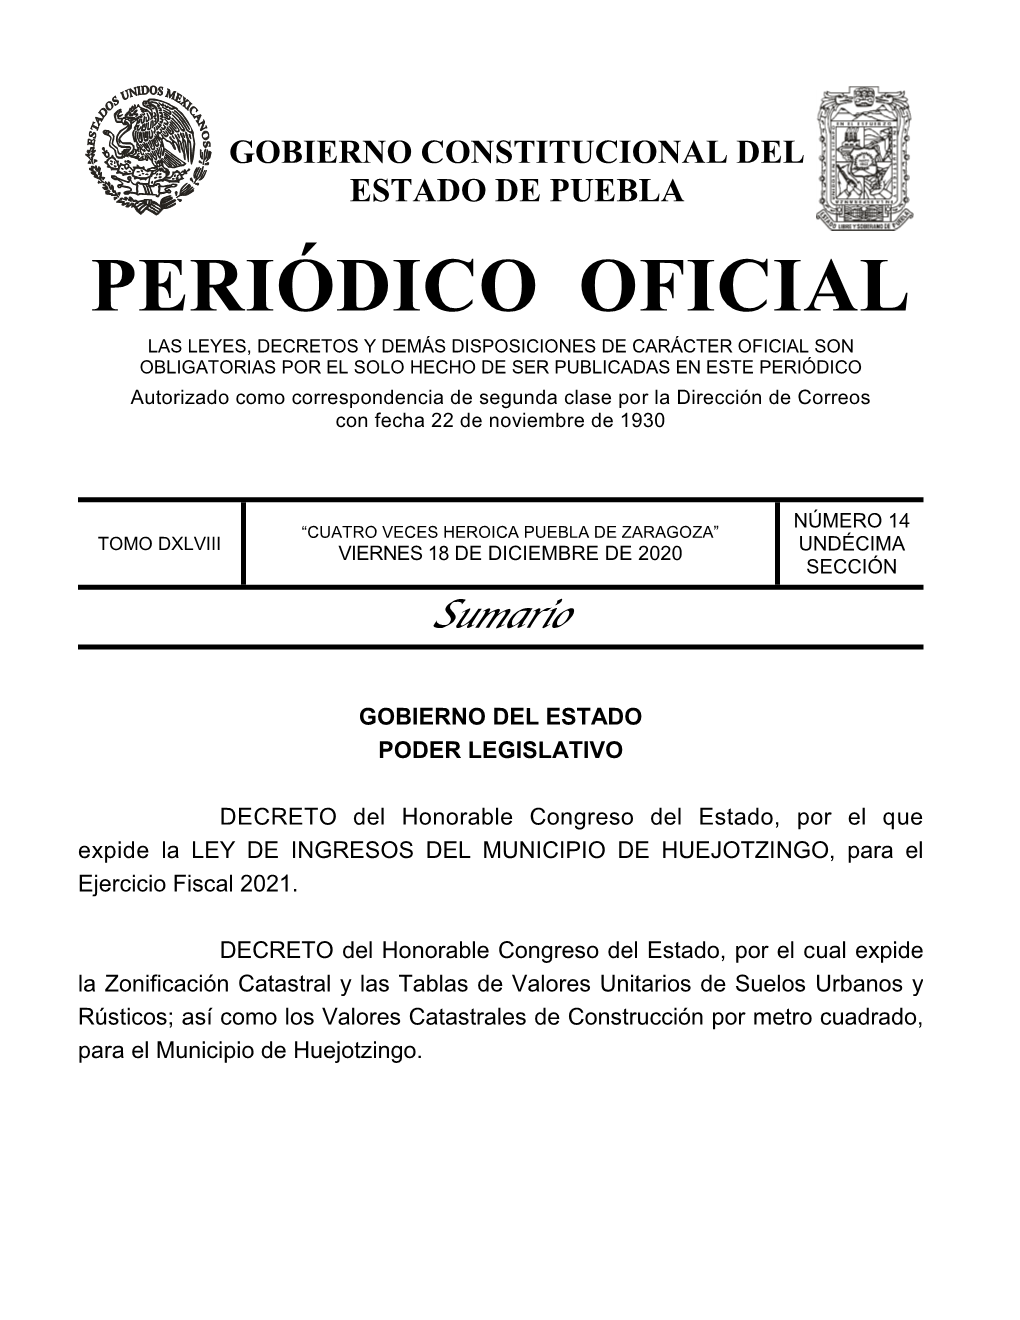 LEY DE INGRESOS DEL MUNICIPIO DE HUEJOTZINGO, Para El Ejercicio Fiscal 2021